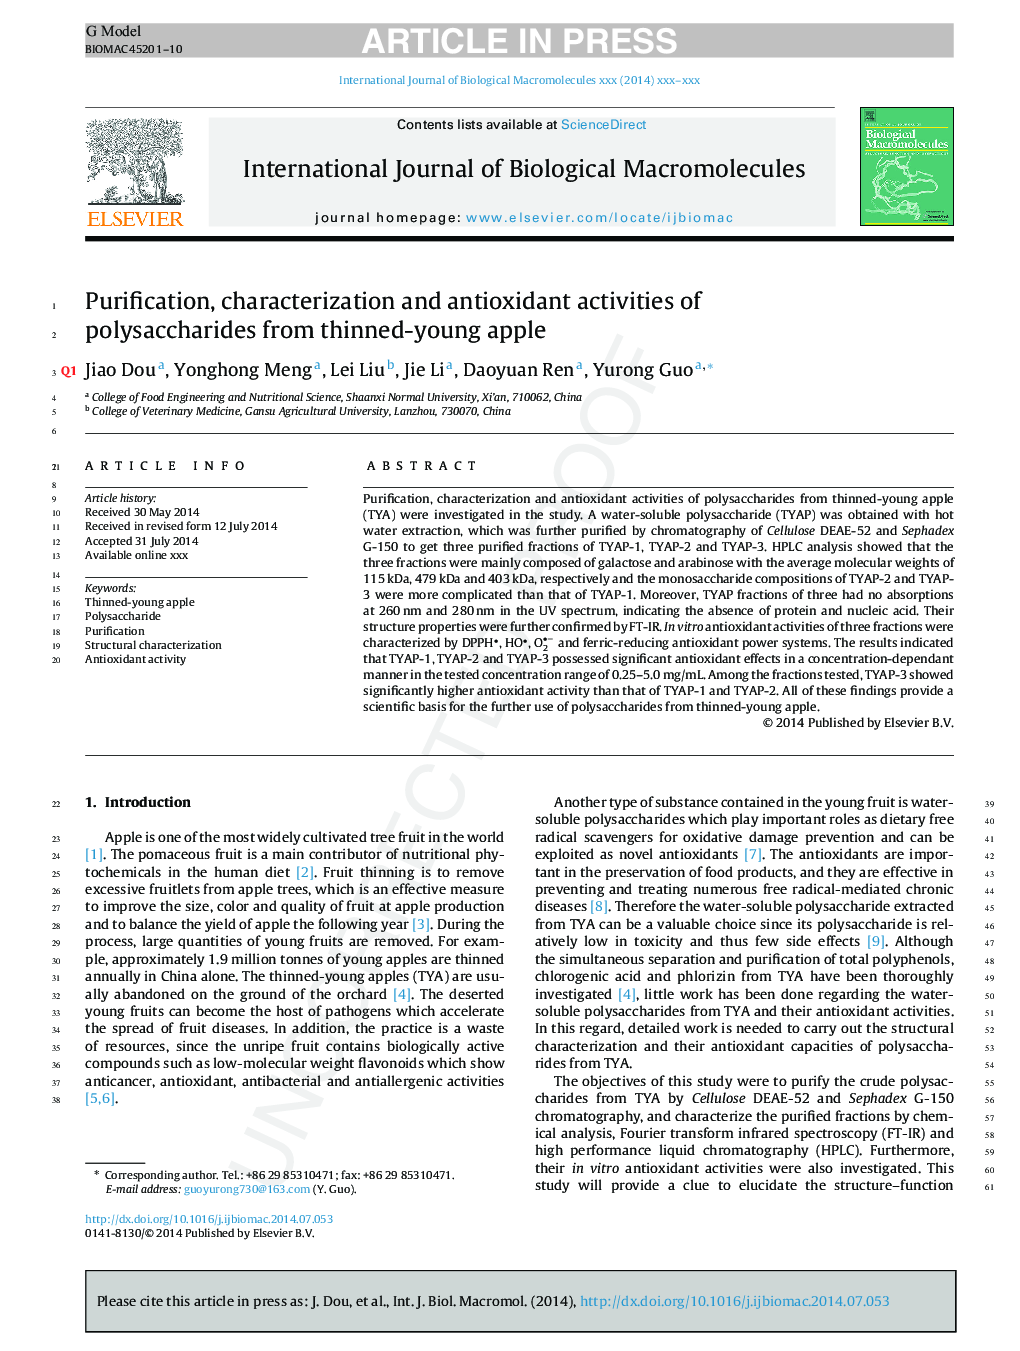 خالص سازی، خصوصیات و فعالیت های آنتی اکسیدانی پلی ساکارید از سیب نابالغ 